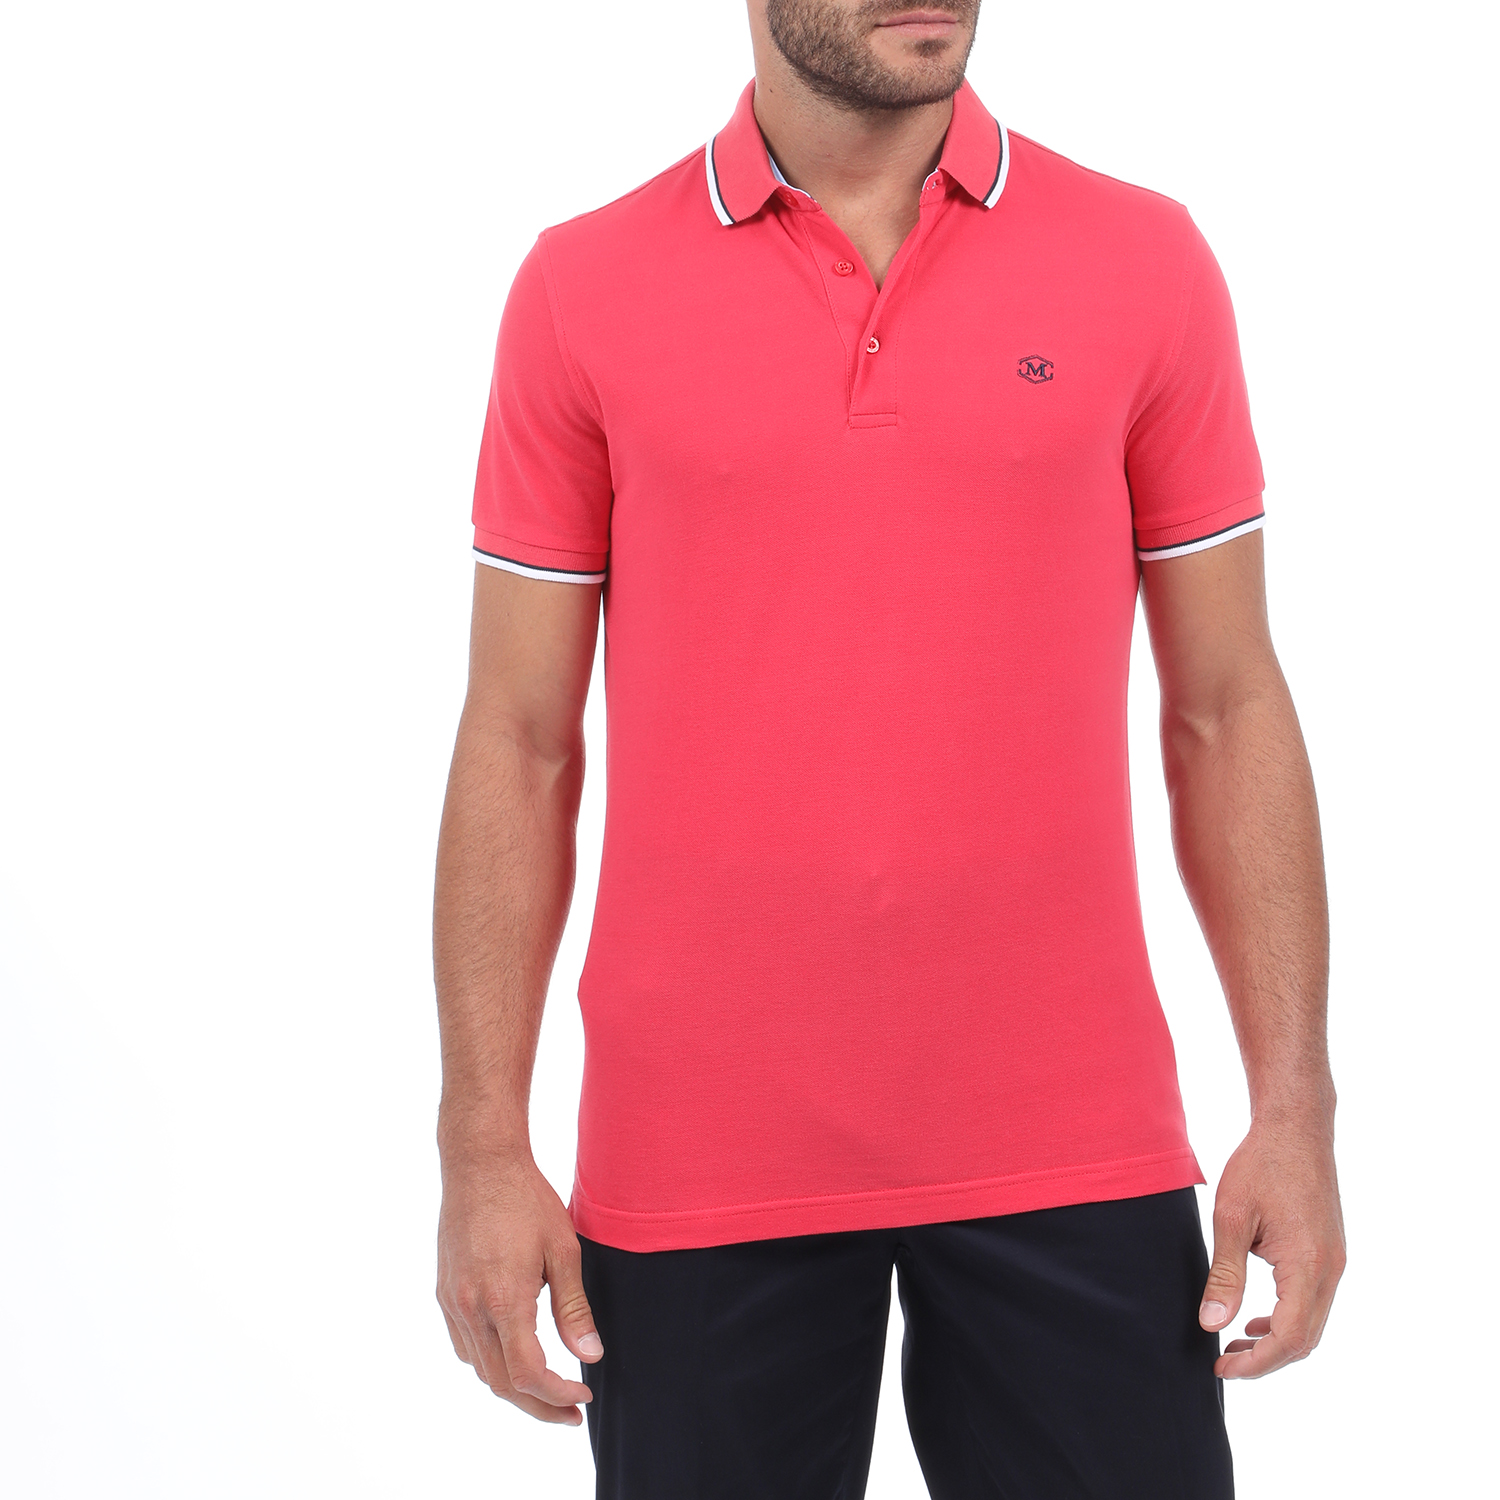 Ανδρικά/Ρούχα/Μπλούζες/Πόλο MARTIN & CO - Ανδρική polo μπλούζα MARTIN & CO ροζ